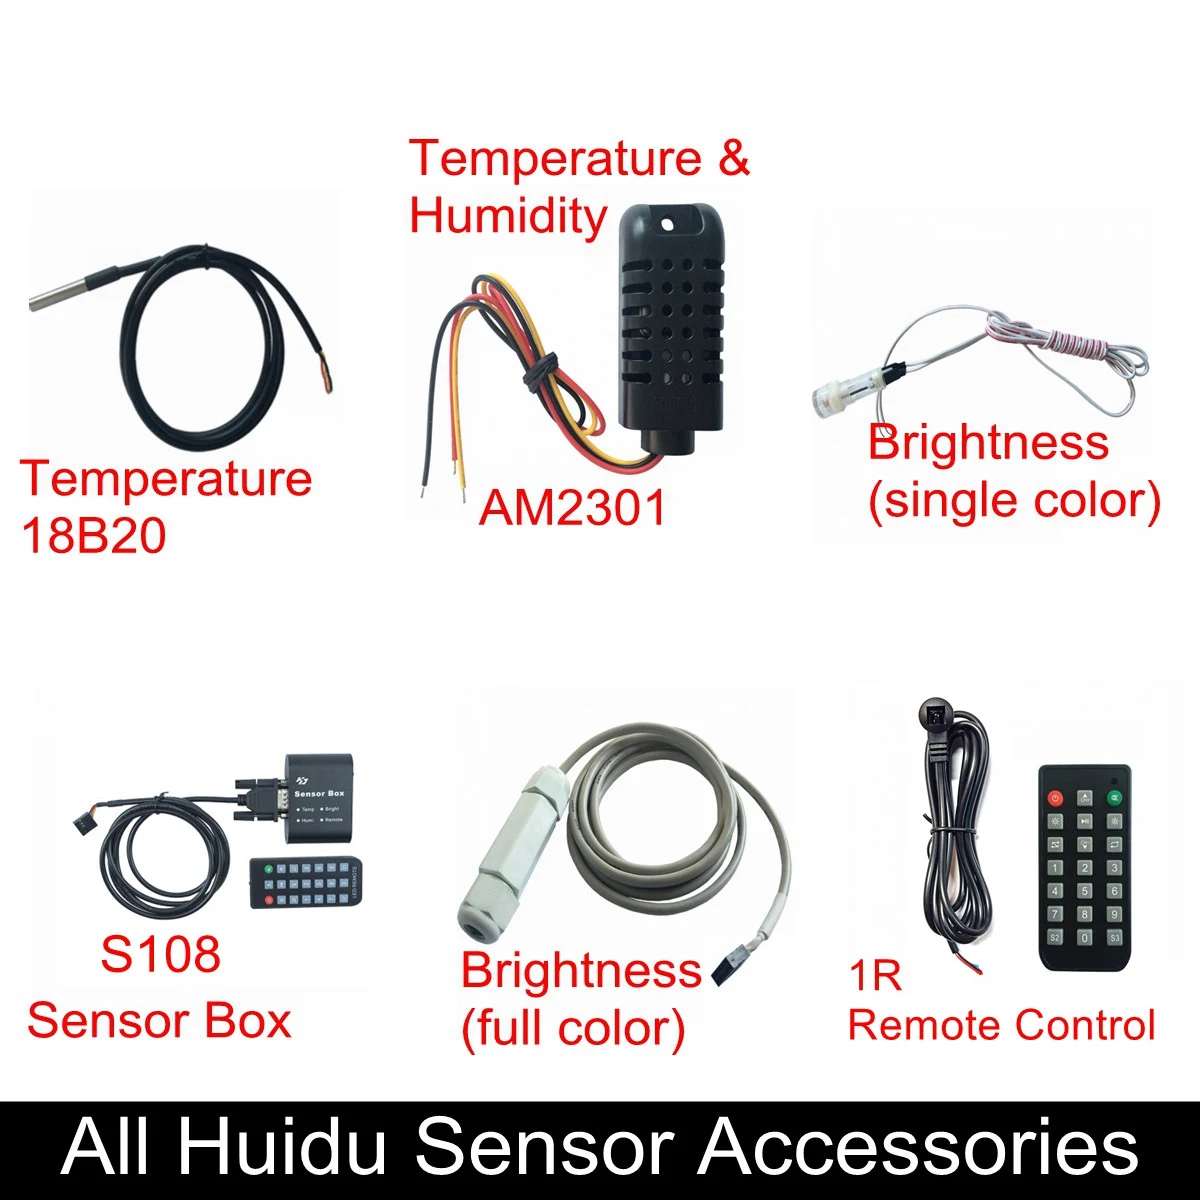 Все датчики Huidu температура 18B20 температура и влажность am2301один RGB яркость S108 коробка 1R пульт дистанционного управления